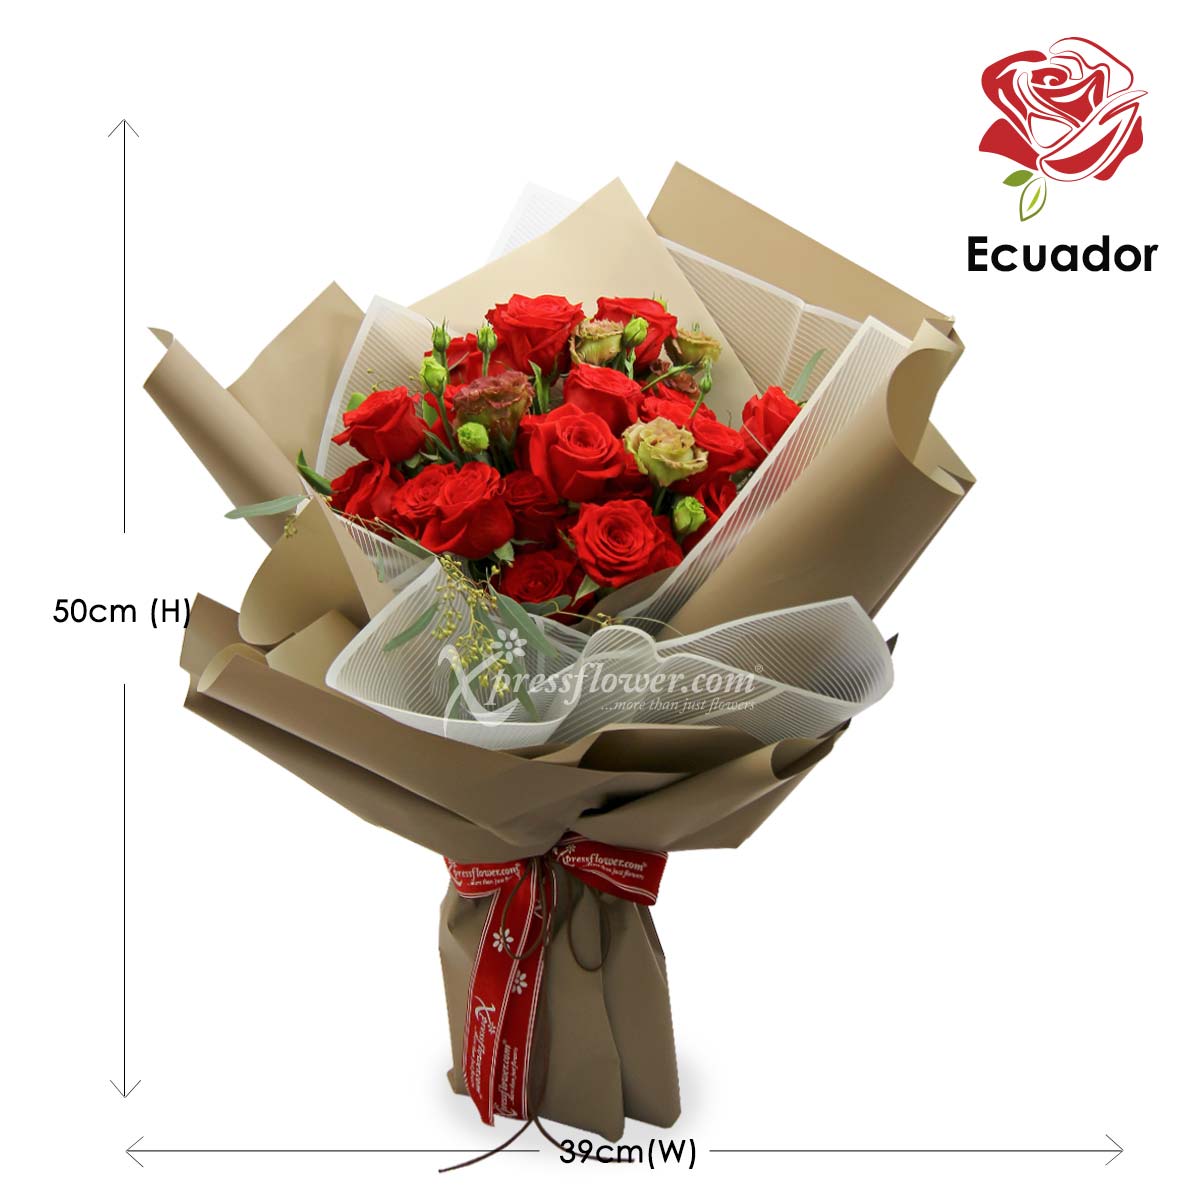 PMB2003 Flaming Ruby Beauty  24 stks Premium Ecuador Red rose